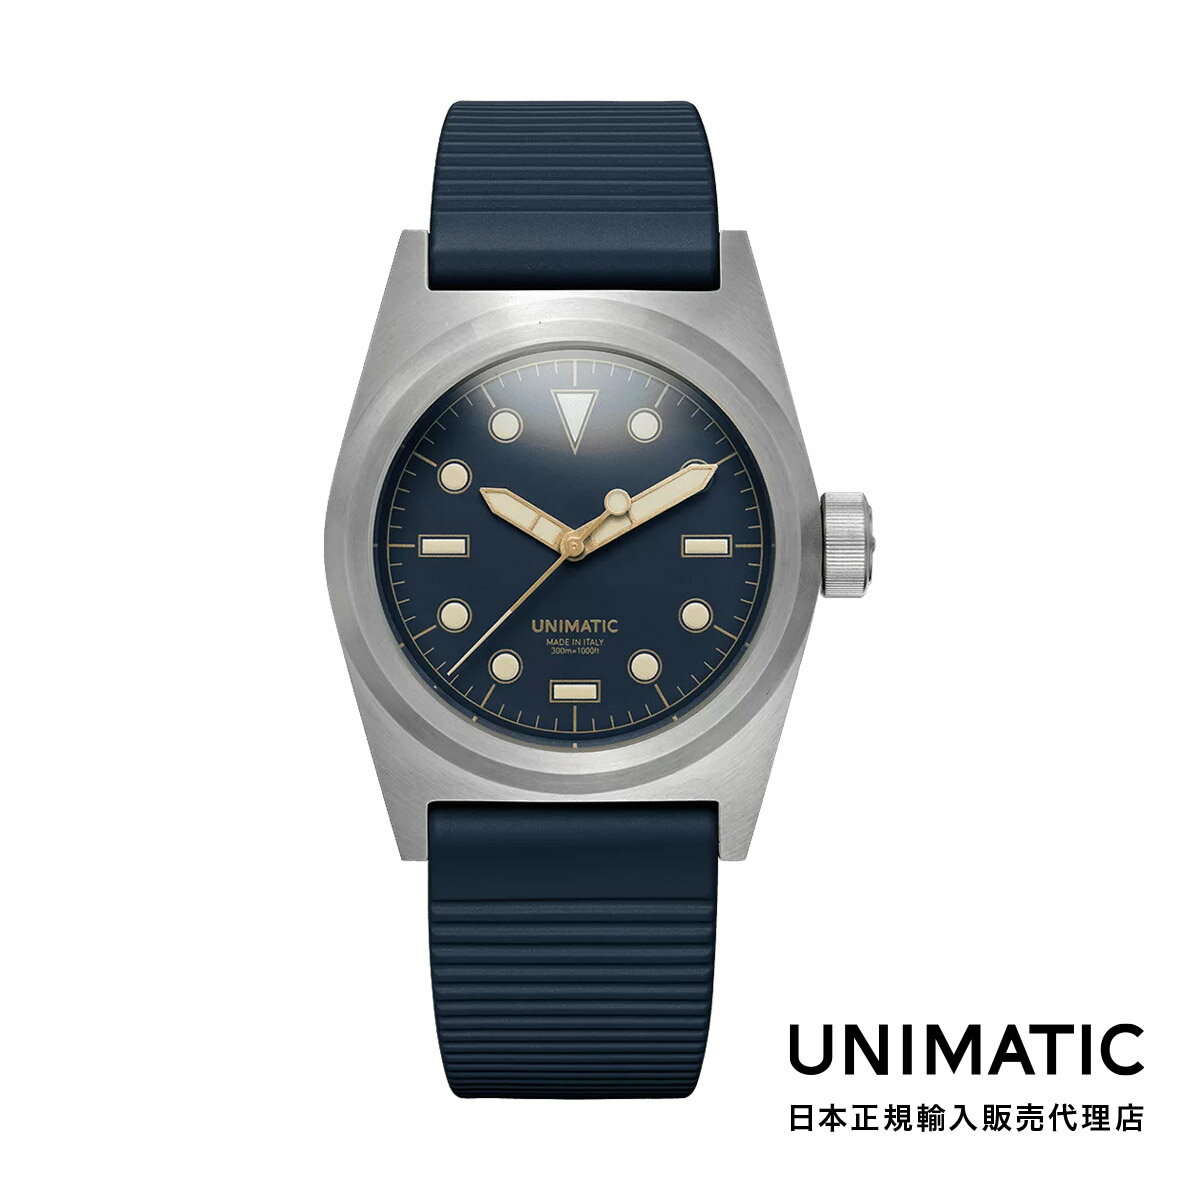 UNIMATIC ウニマティック MODELLO DUE 8N メンズ 腕時計